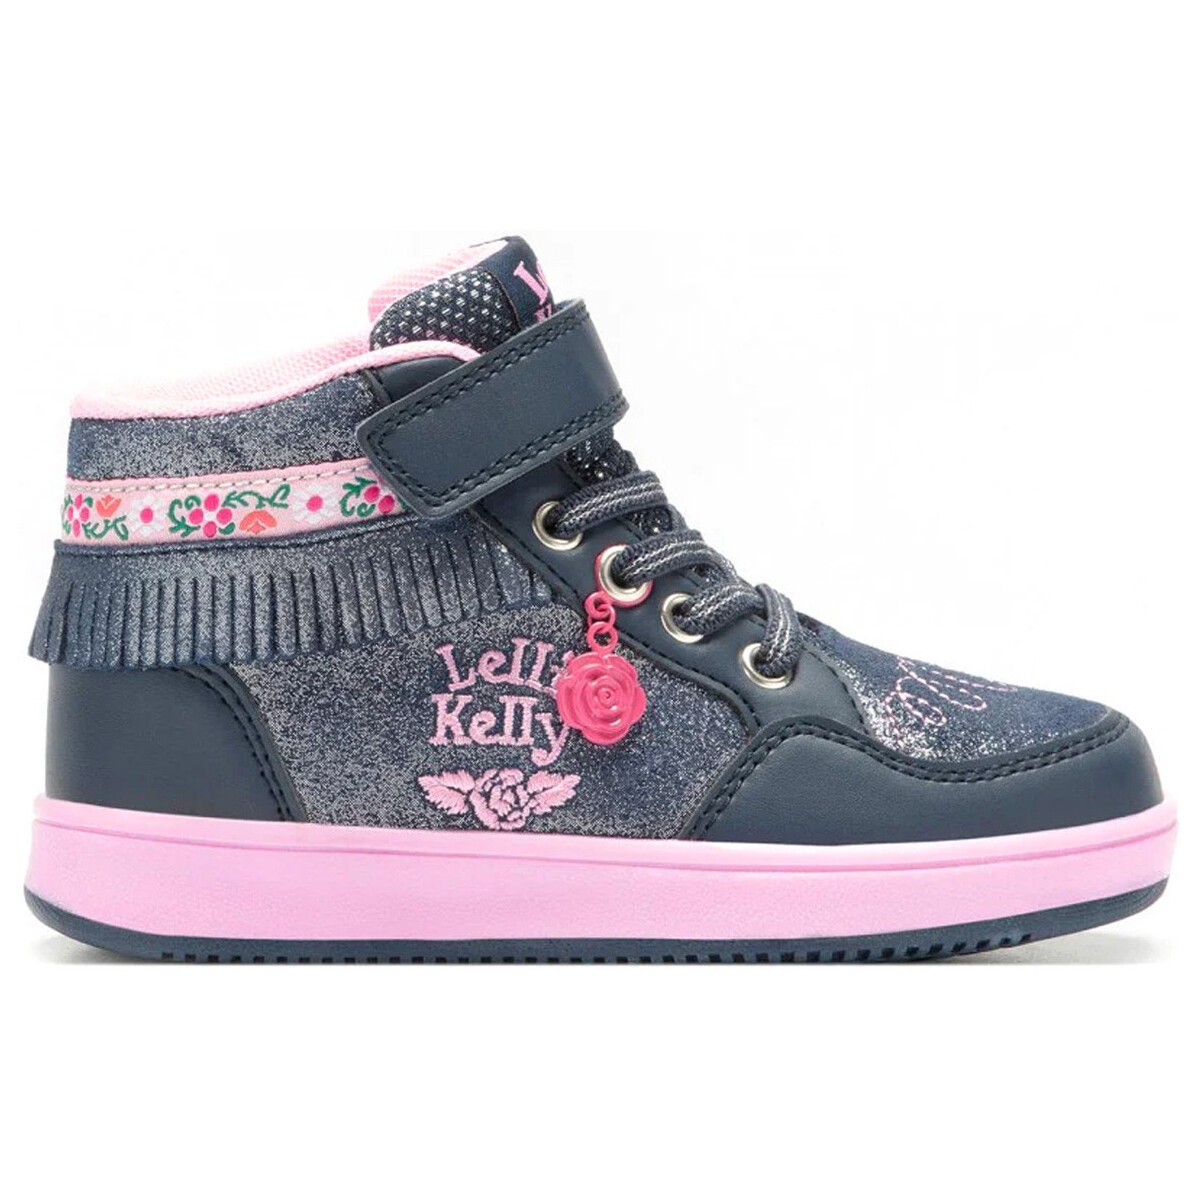 Schuhe Kinder Sneaker Lelli Kelly LKAA8088-GE01 Blau